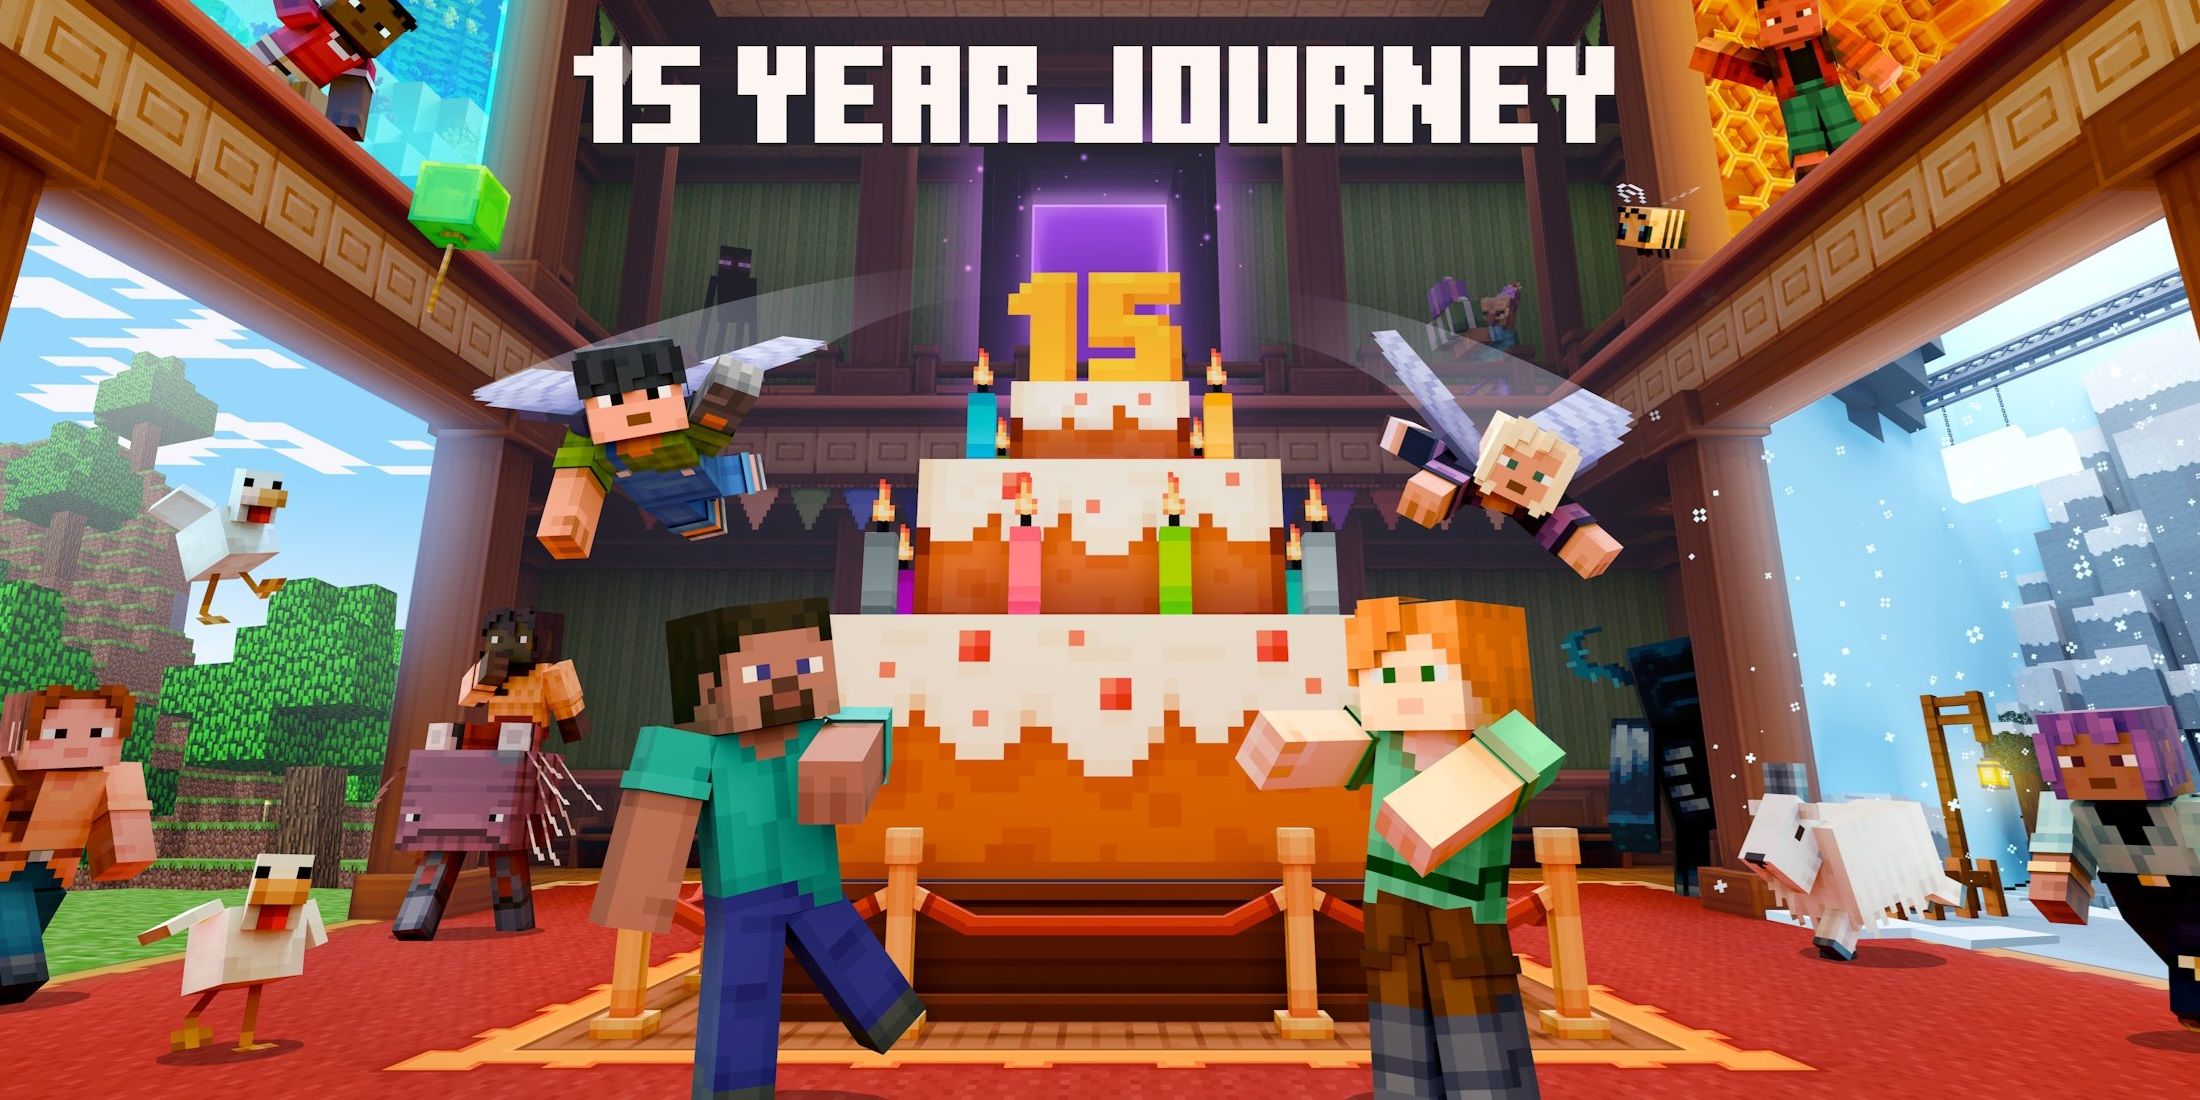 Minecraft 15 Year Journey Map